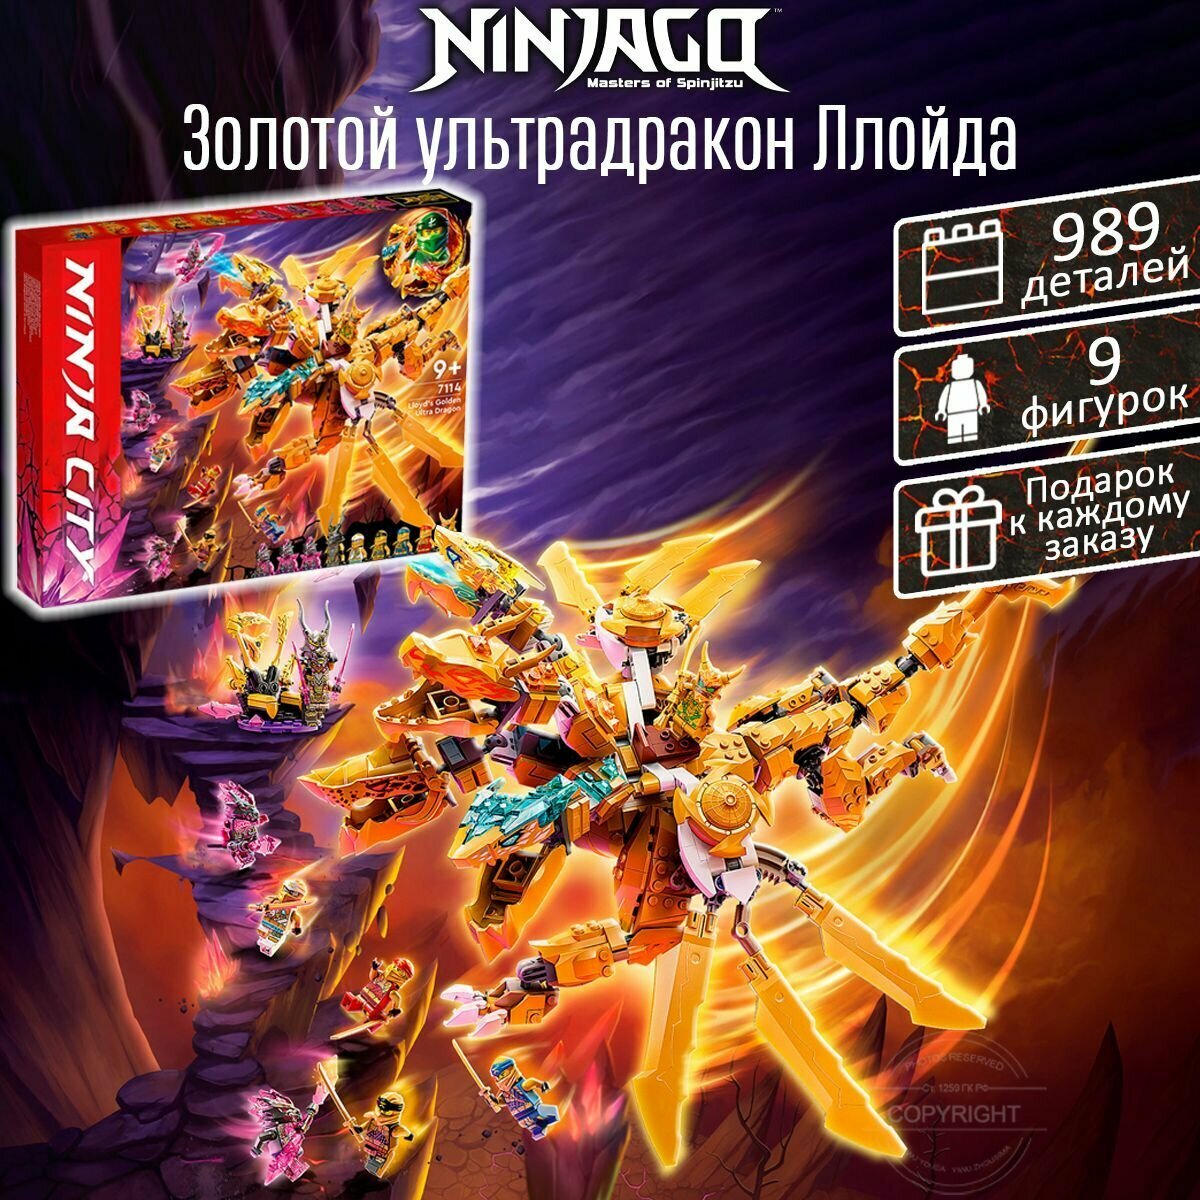 Конструктор Ниндзяго Золотой ультра дракон Ллойда, 989 деталей / набор для детей Ninjago / детские игрушки